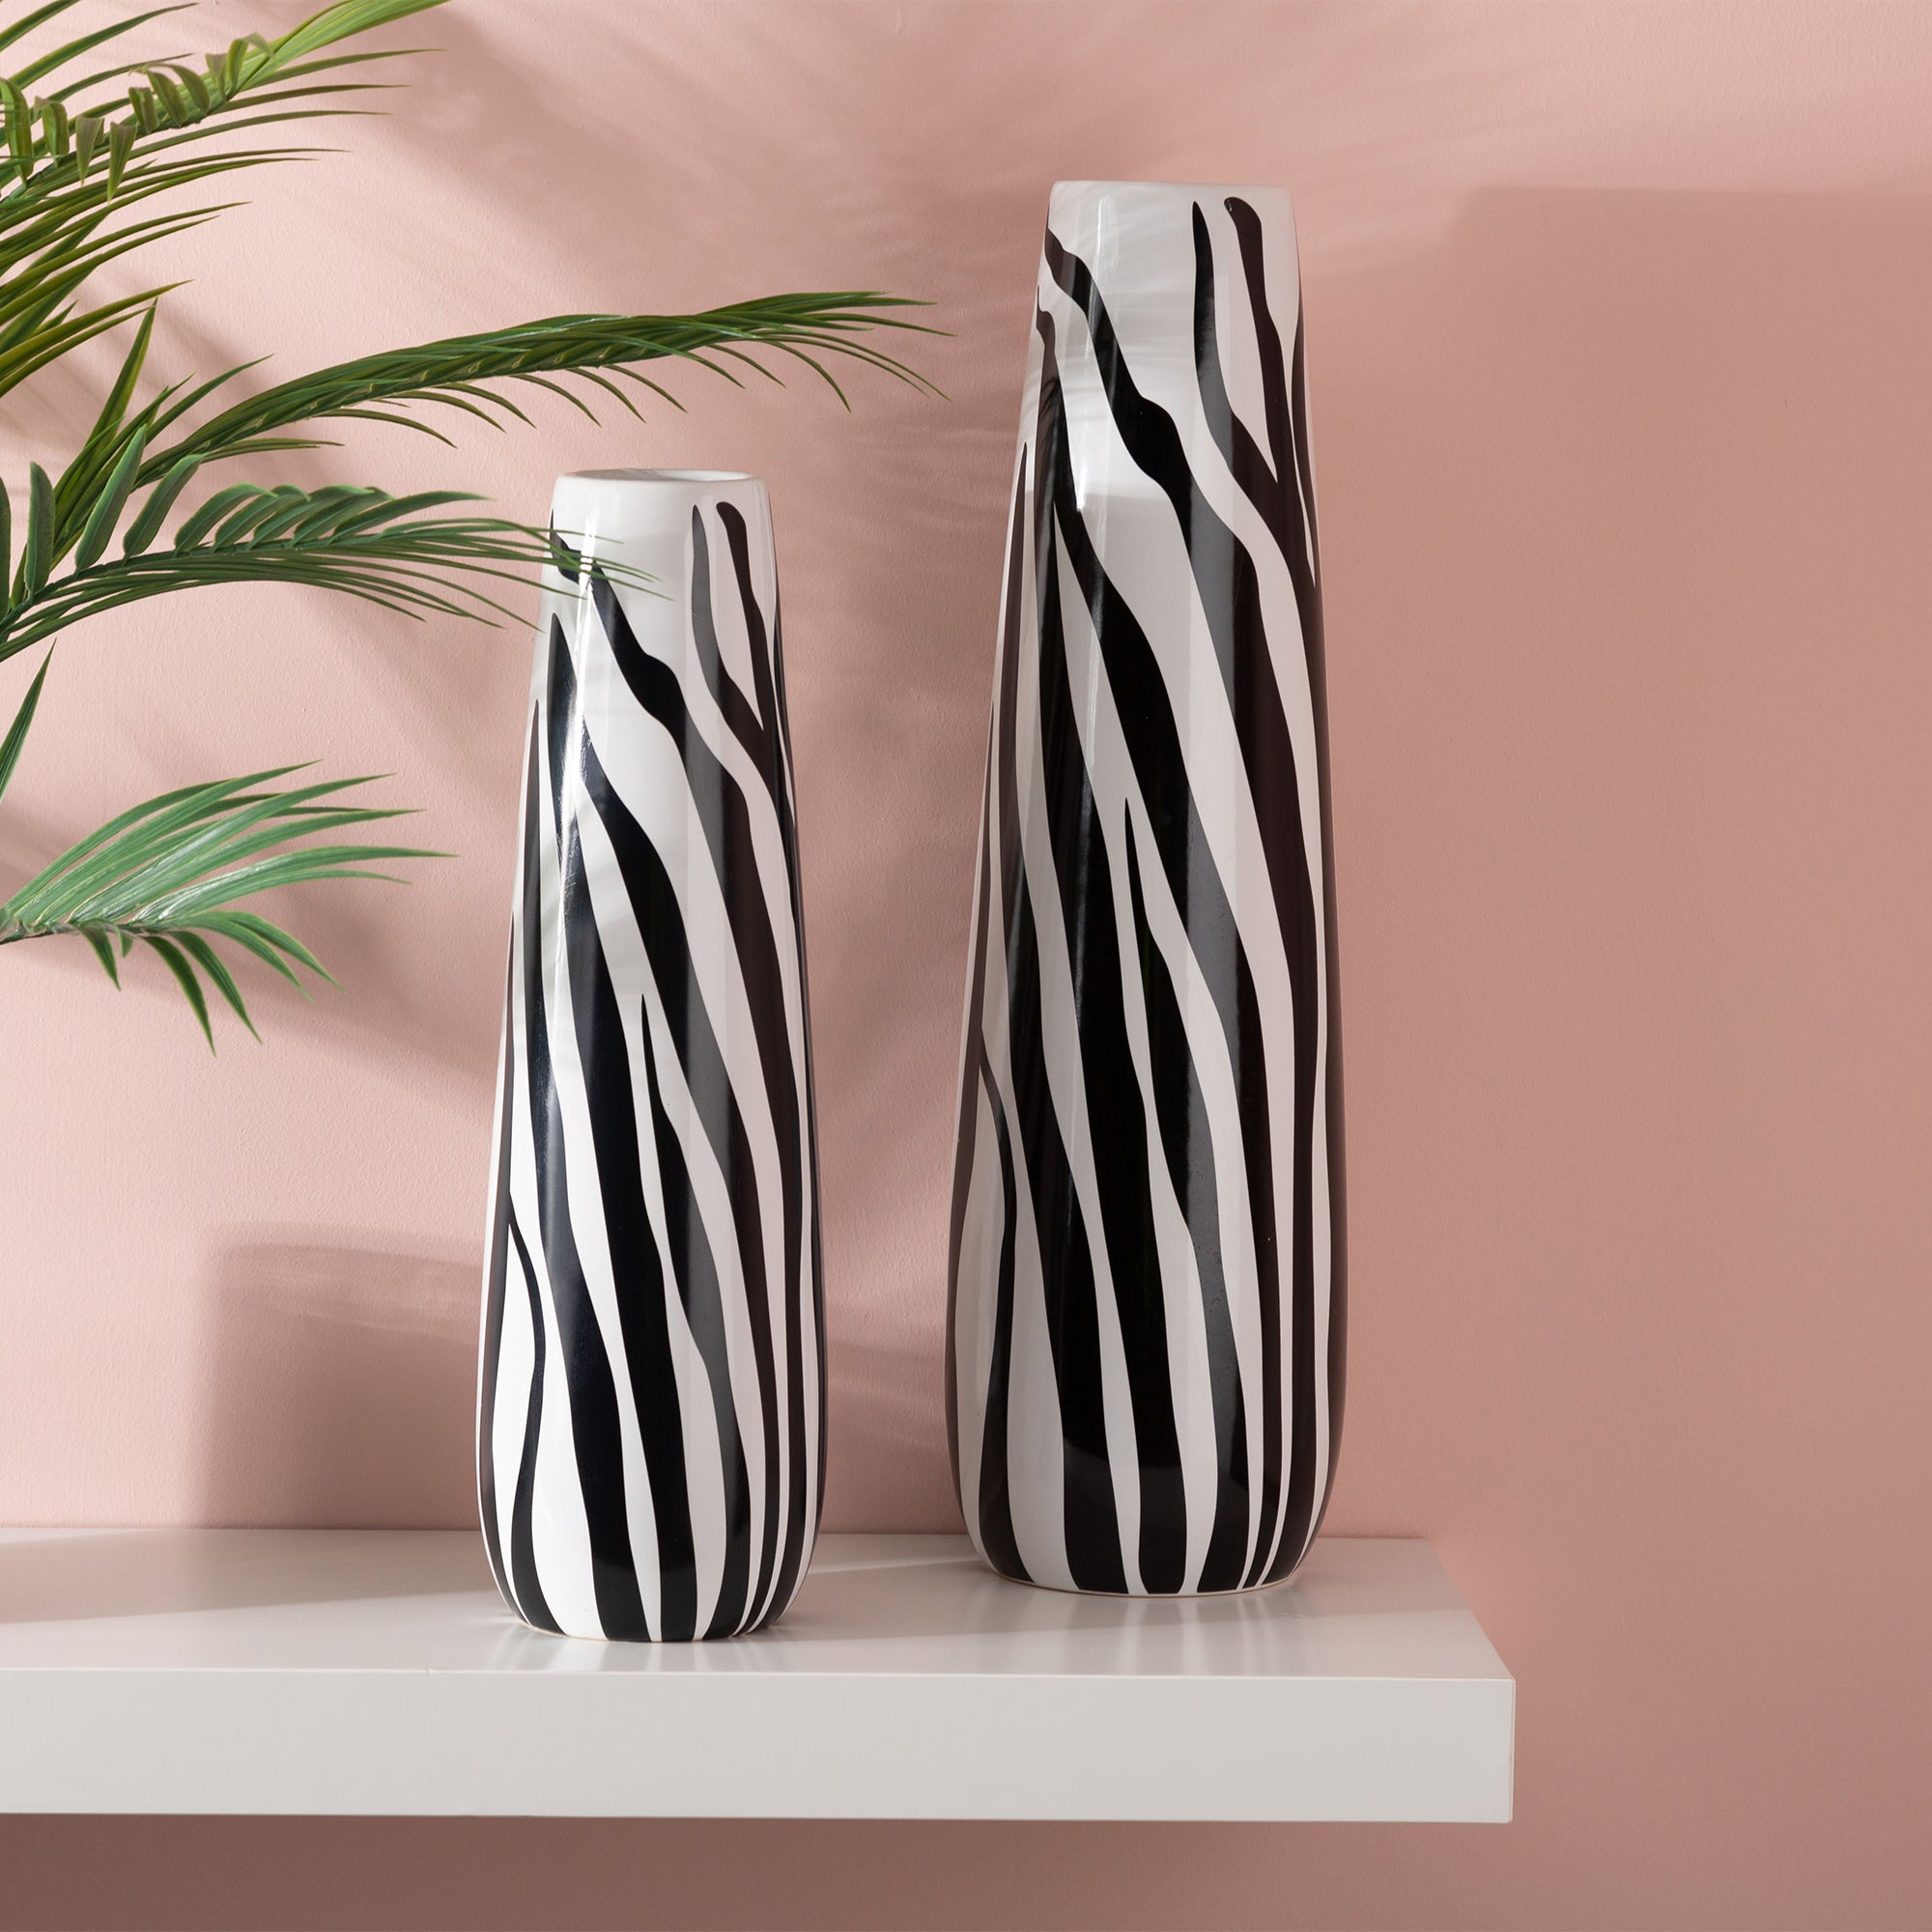 Zebra Print Vase Large